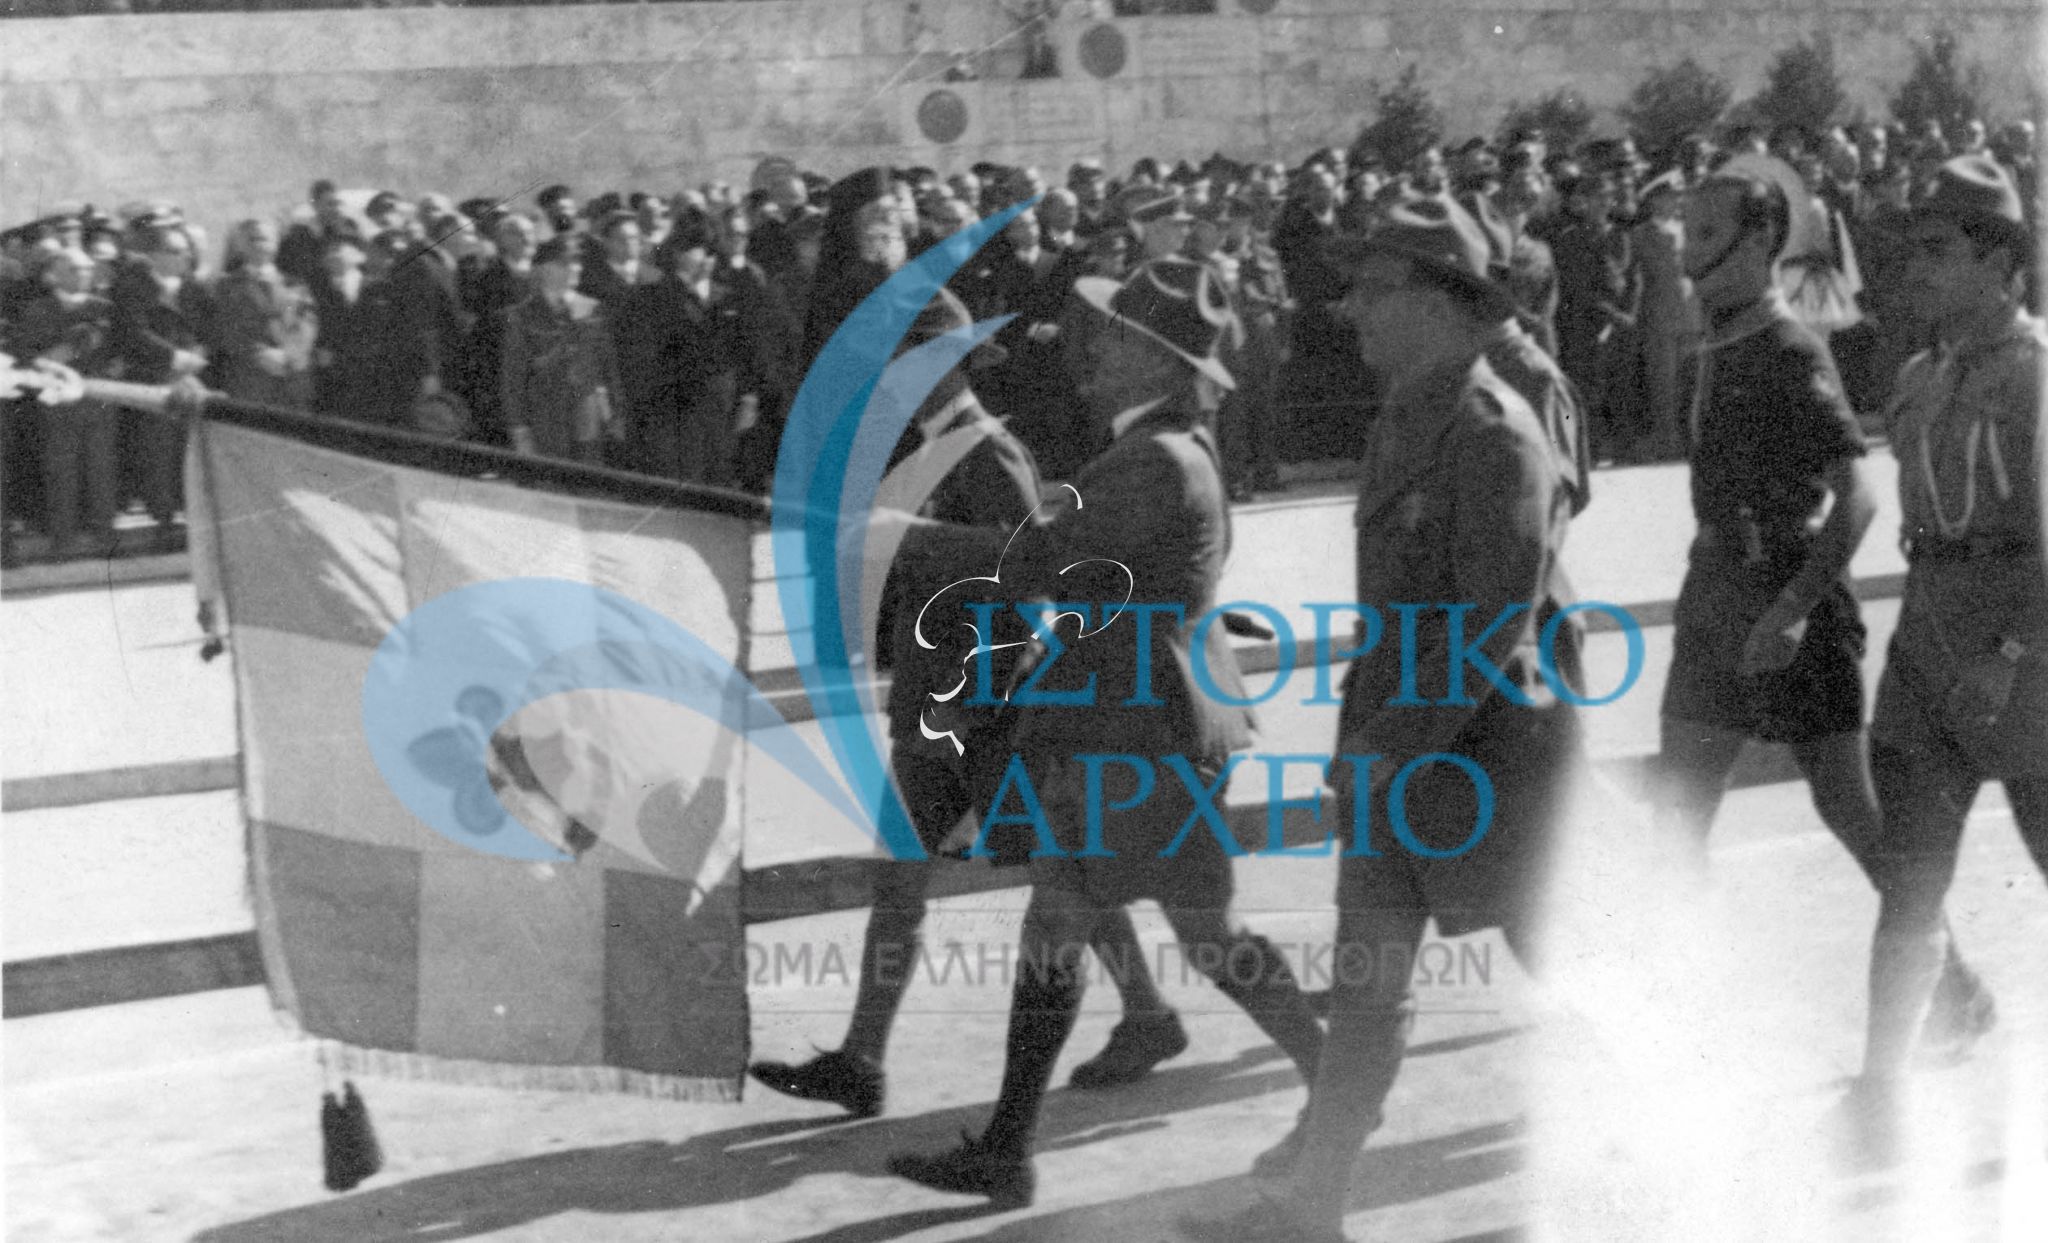 Πρόσκοποι χαιρετούν με την Σημαία του ΣΕΠ τον Αντιβασιλέα Αρχιεπίσκοπο Αθηνών & Πάσης Ελλάδος Δαμασκηνό κατά την παρέλαση της 25ης Μαρτίου 1946 στην Αθήνα.